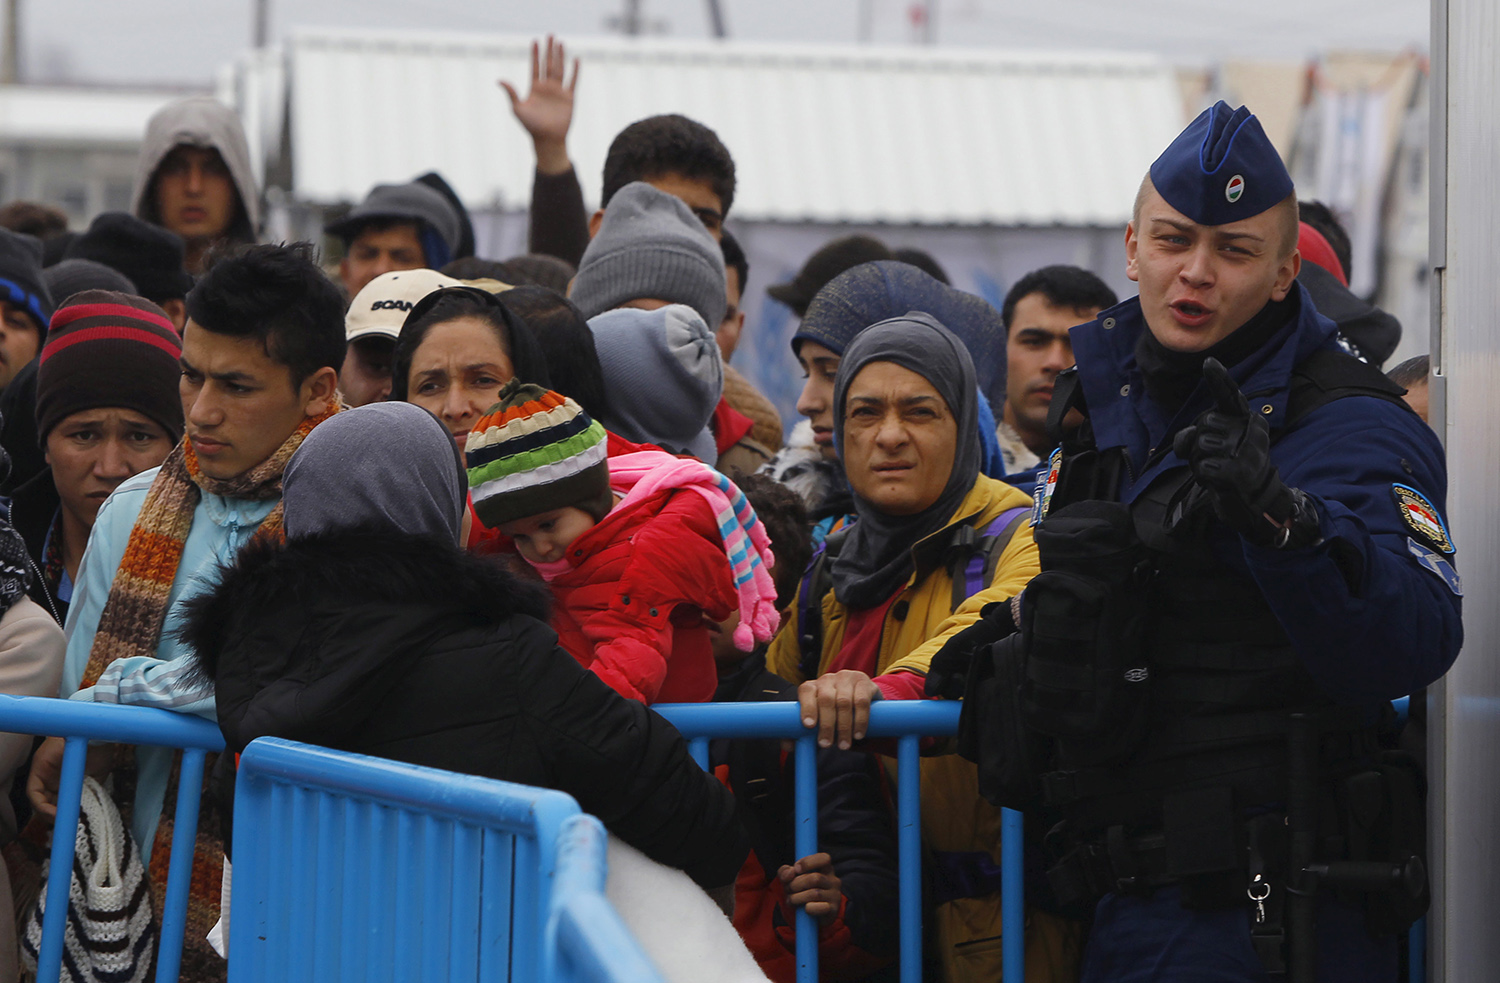 Nueva denuncia por el "espantoso trato" de Hungría a los inmigrantes y refugiados